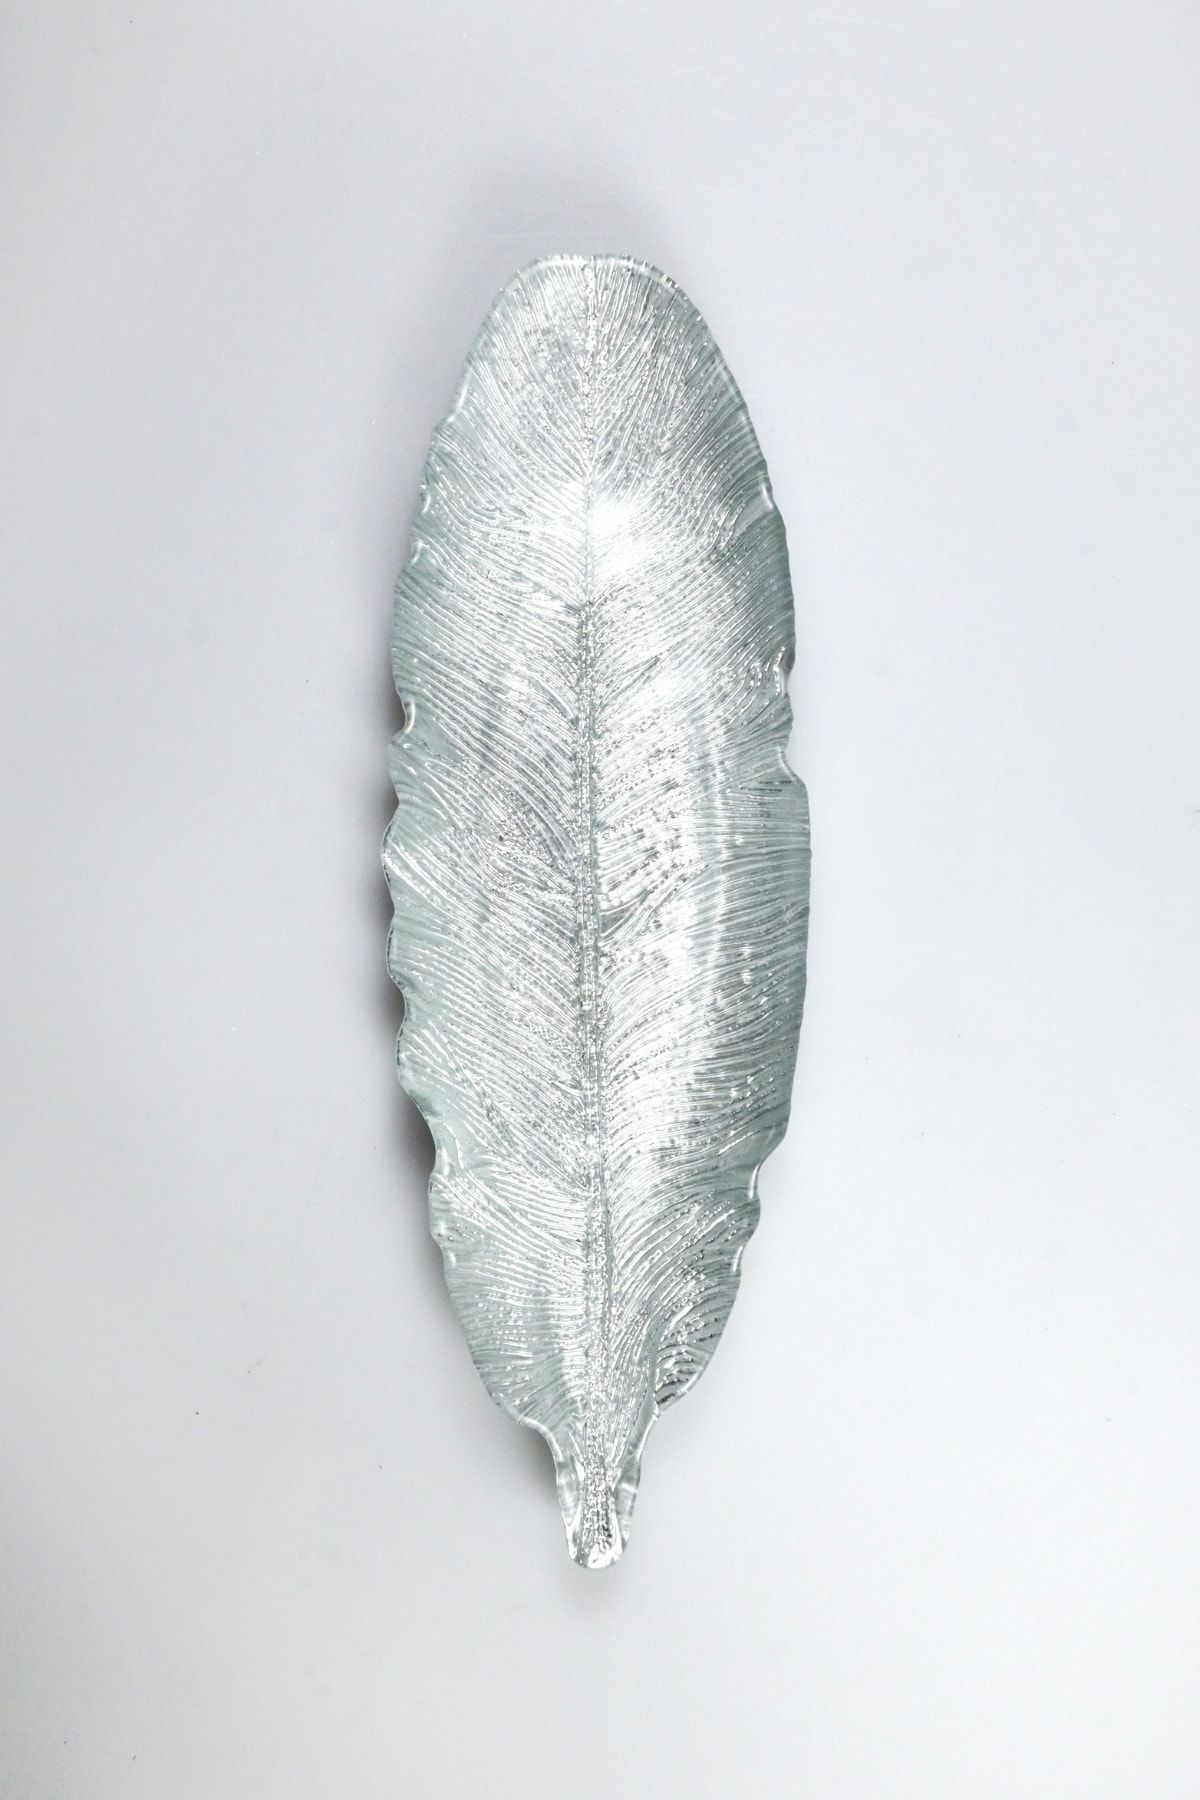 Heritage Gümüş Kaplama Kuş Tüyü Dekoratif Cam Servis Sunum Tabağı 25x9 Cm